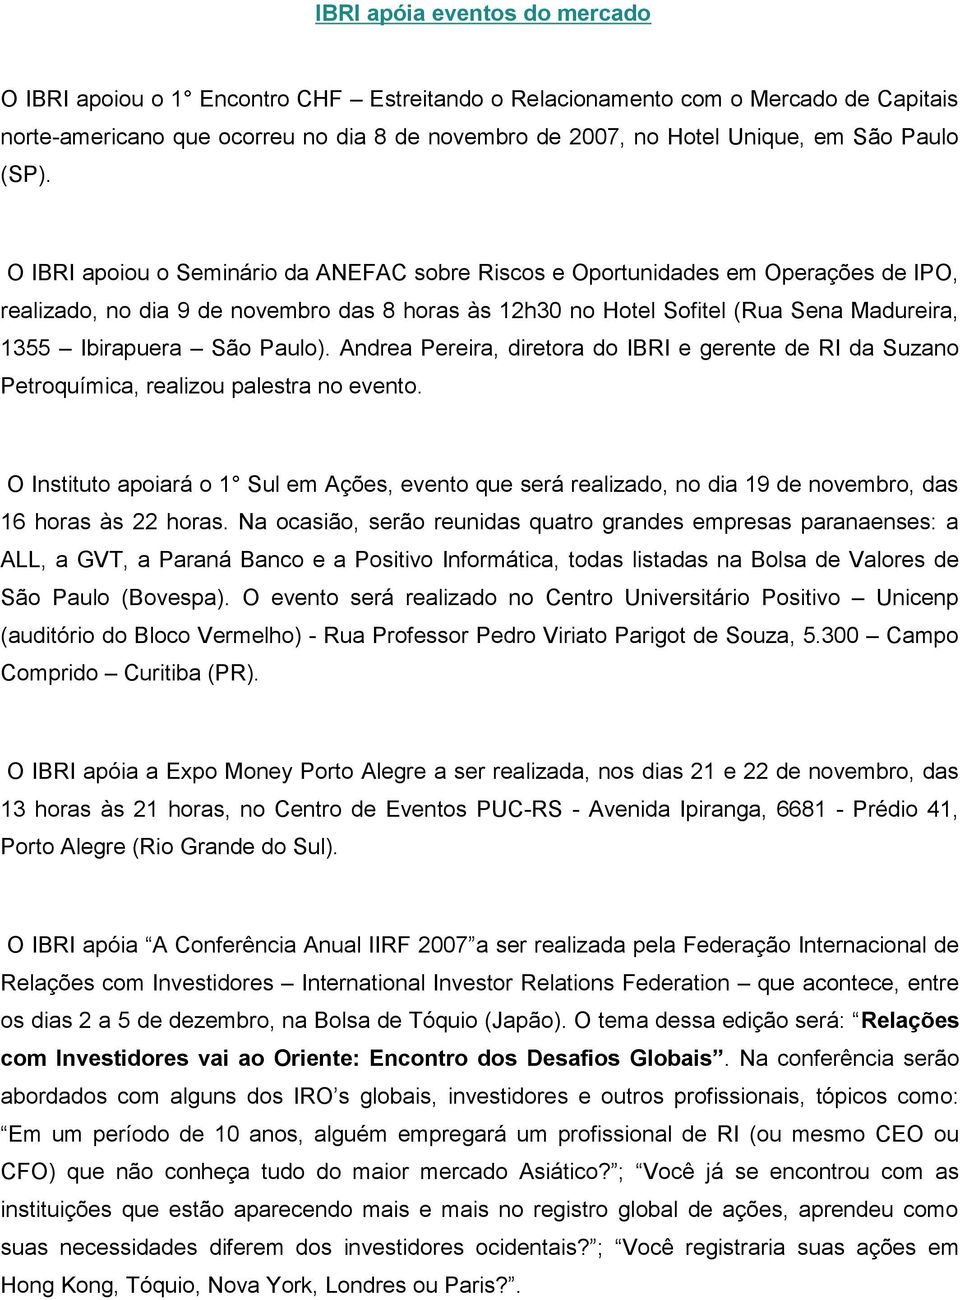 O IBRI apoiou o Seminário da ANEFAC sobre Riscos e Oportunidades em Operações de IPO, realizado, no dia 9 de novembro das 8 horas às 12h30 no Hotel Sofitel (Rua Sena Madureira, 1355 Ibirapuera São